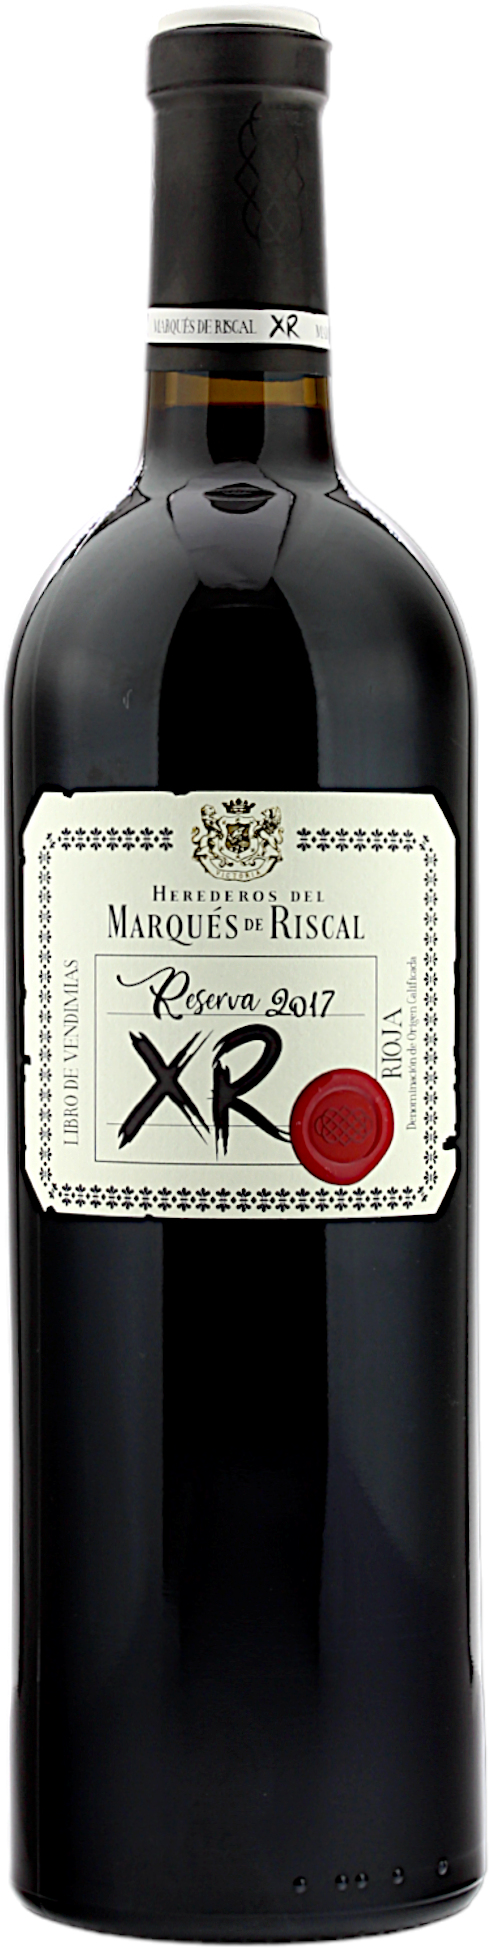 Marqués de Riscal Reserva 2017 XR DOC La Rioja